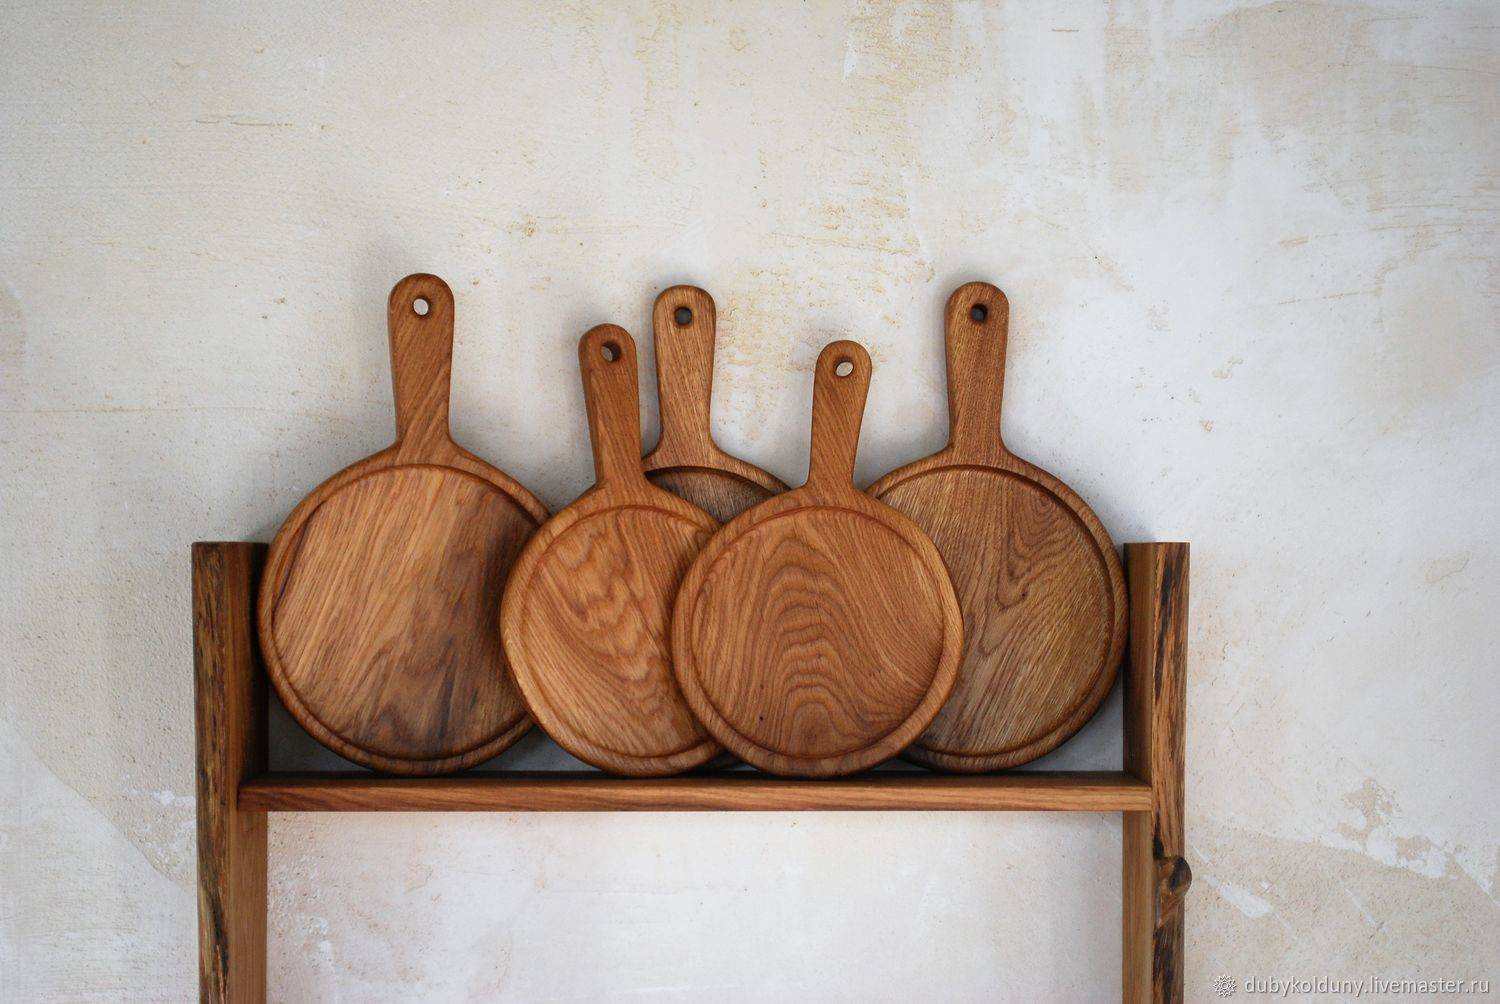 Бизнес идея — изготовление посуды из дерева